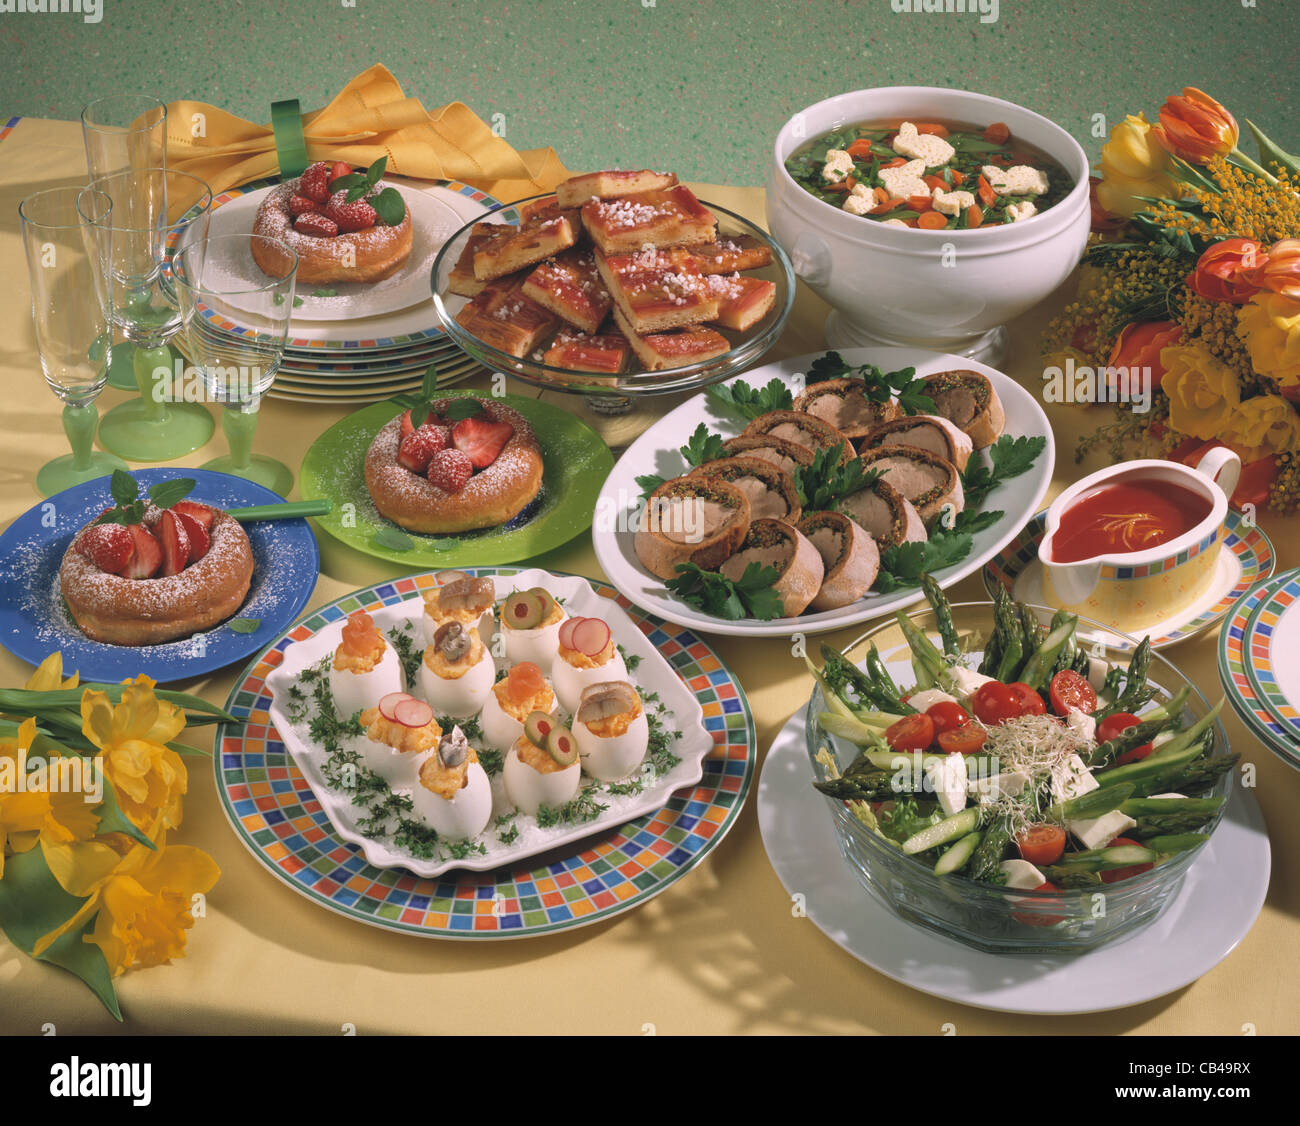 Easter buffet: Vegetable soup, asparagus salad, filled eggs, porkfillet, rhubarb cake Stock Photo